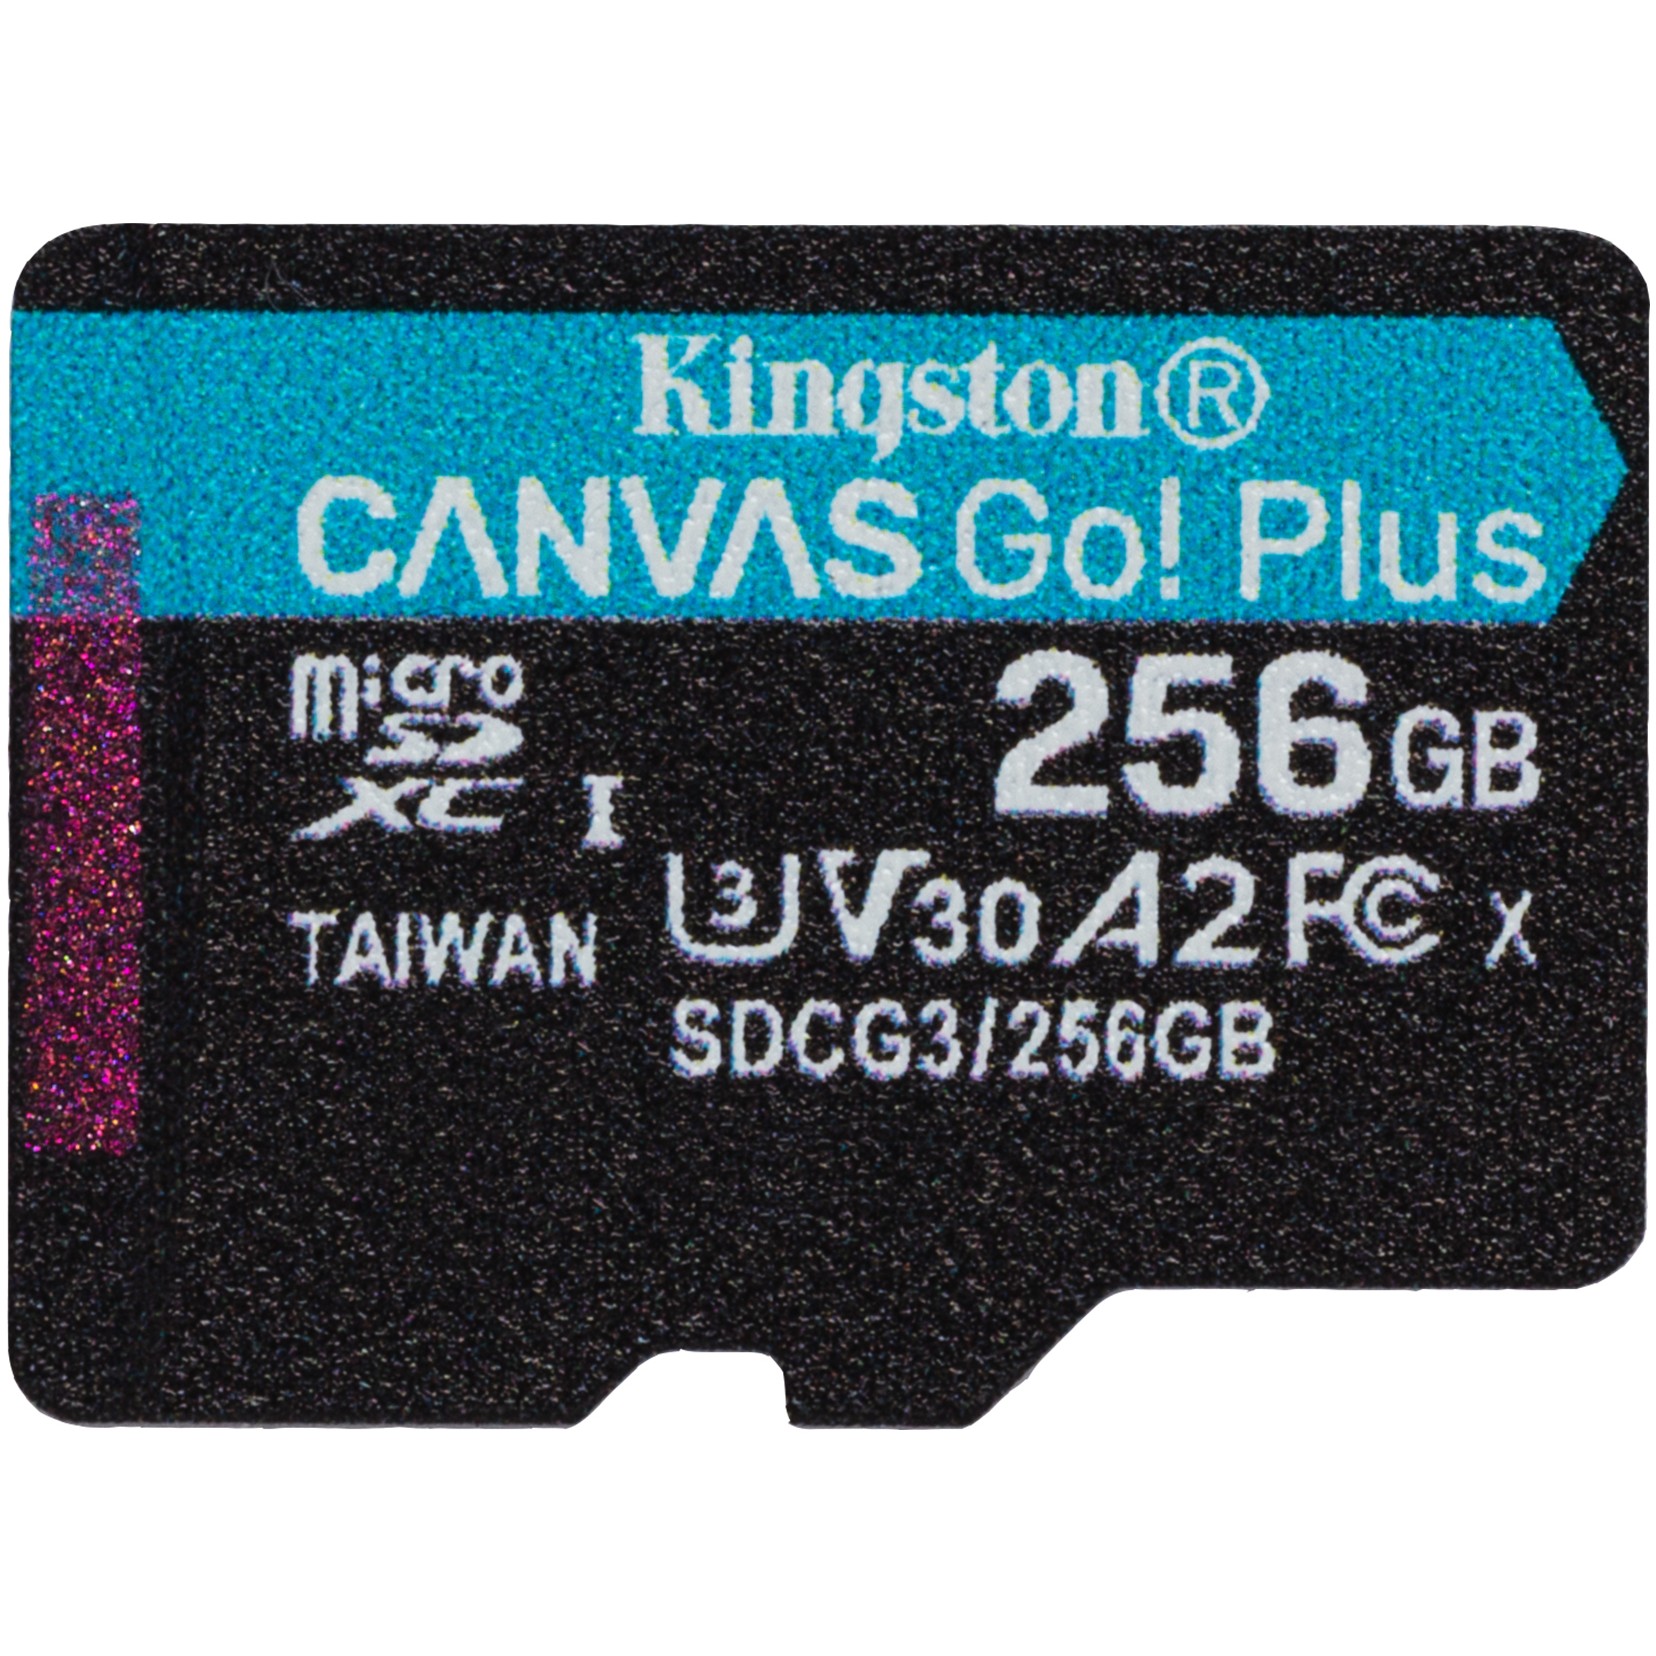 Kingston Technology Canvas Go! Plus - SDCG3/256GBSP